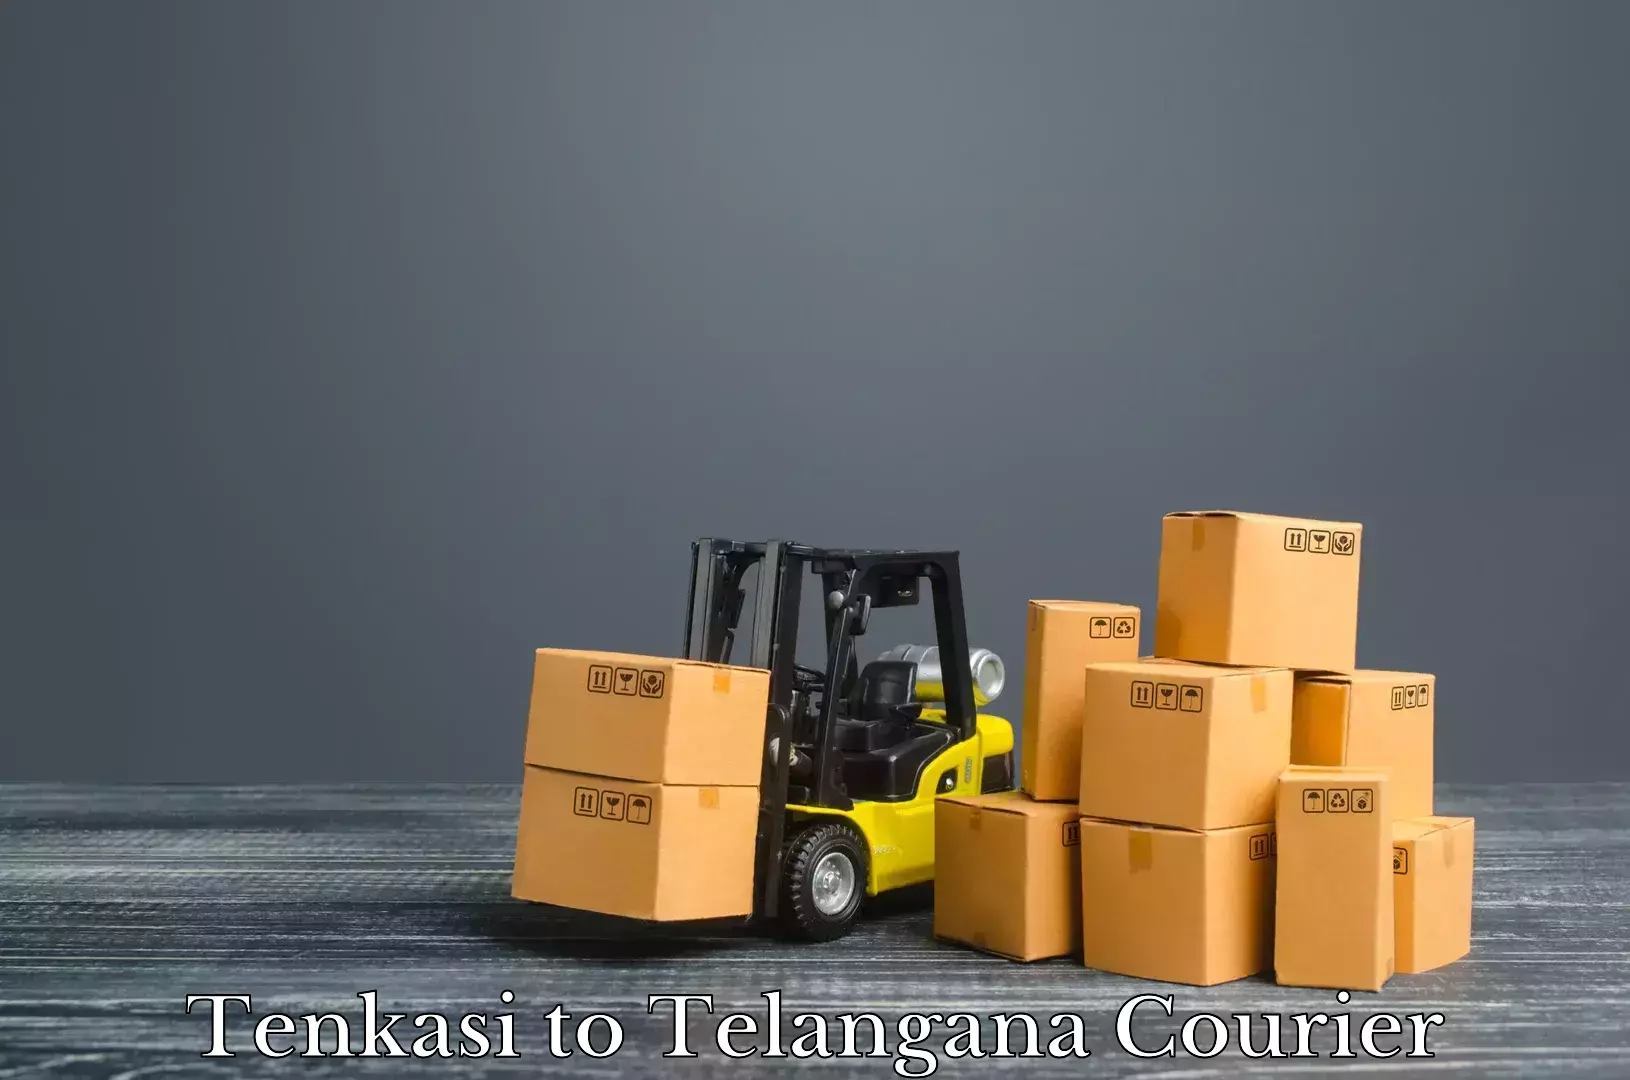 Baggage transport innovation Tenkasi to Shankarpalle